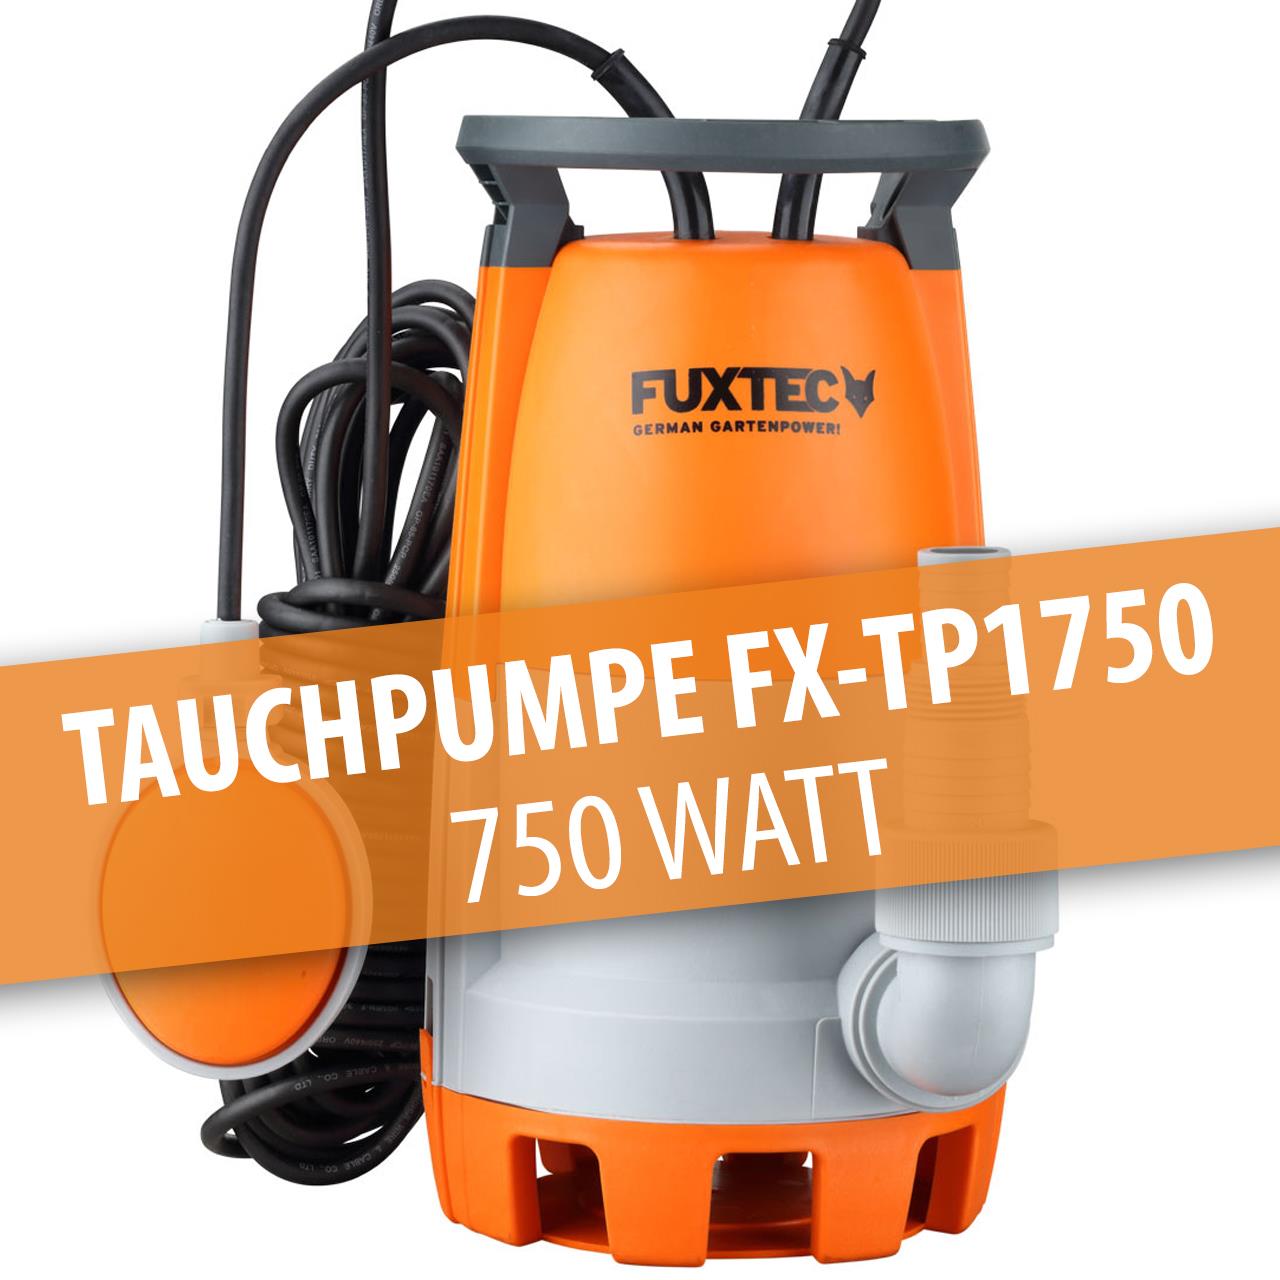 FUXTEC Tauchpumpe FX-TP1750 - 750 Watt